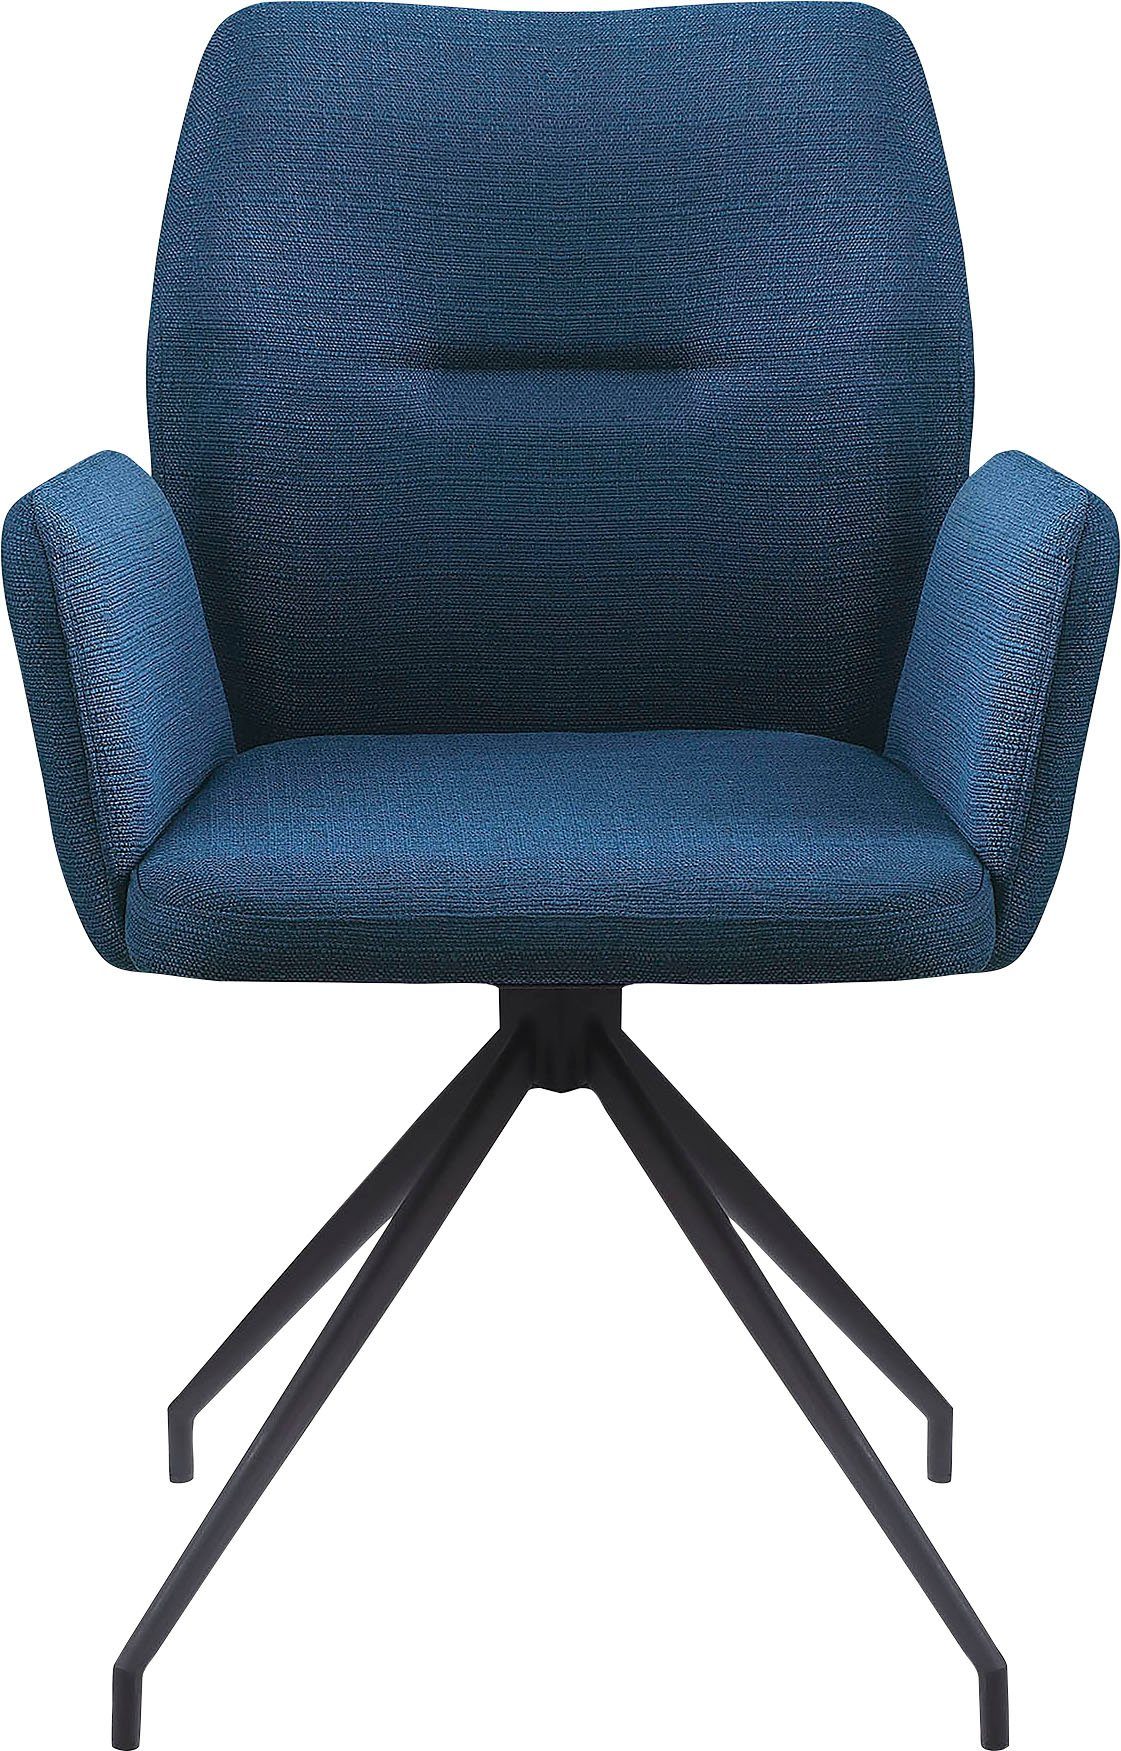 SalesFever Armlehnstuhl, mit 180° Drehfunktion Blau, Schwarz | Blau